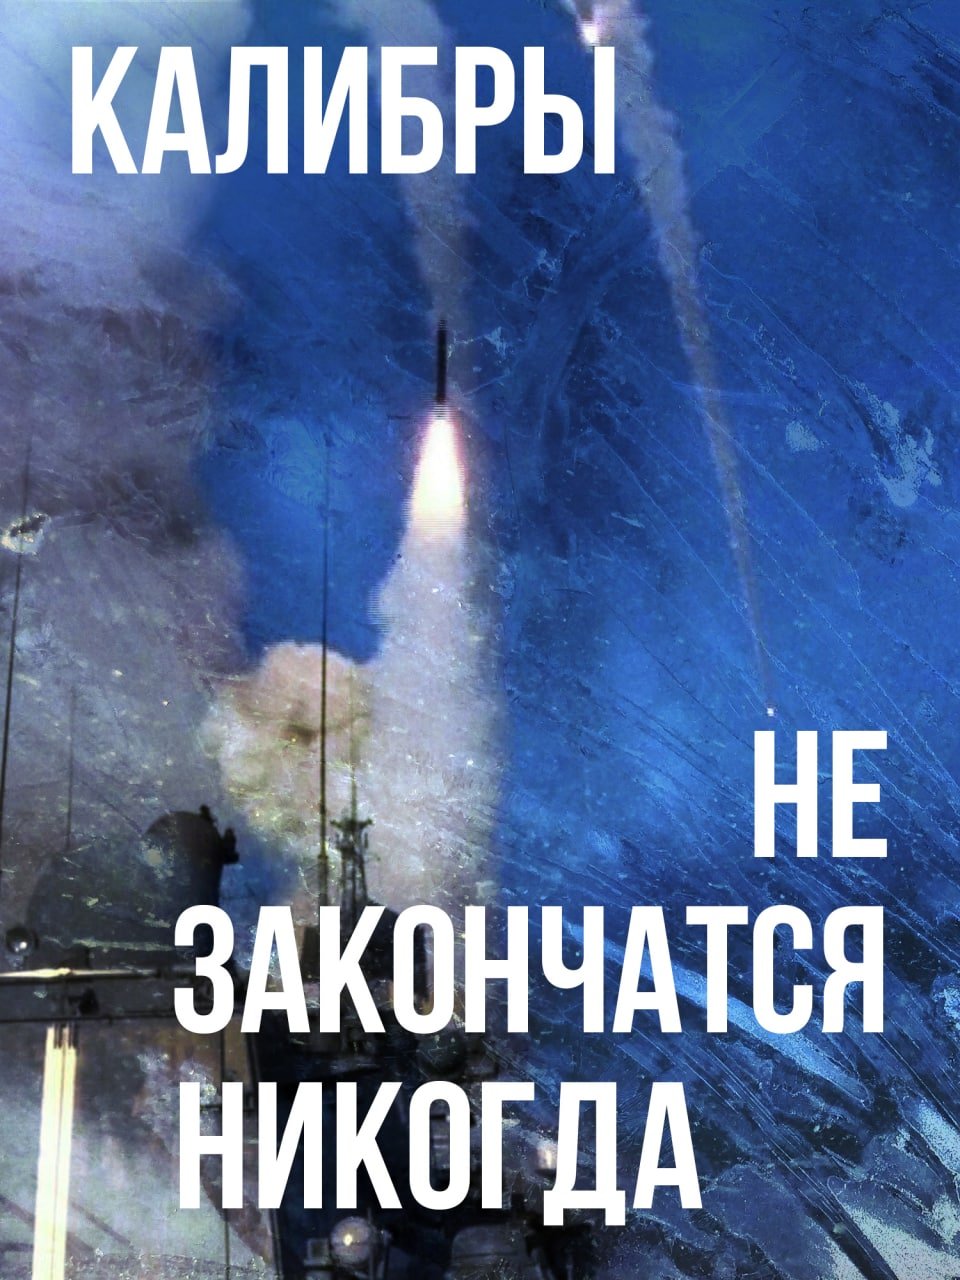 Ночью Россия нанесла ограниченный ракетный удар по Украине. Сегодня ночью российские ракеты и дроны ударили по тыловым регионам Украины, подконтрольным киевскому режиму.   Воздушные силы ВСУ сообщают, что применялись «ракеты воздушного, морского базирования и ударные БПЛА типа «Shahed».   Всего, по данным украинской стороны, применялось «6 ракет разных типов и 23 ударных БпЛА: 1 аэробалистическая ракета Х-47 М2 «Кинжал», 4 крылатых ракеты «Калибр», 1 управляемая авиационная ракета Х-59/Х-69, 23 ударных БпЛА.   Пока данных о результатах атаки нет, ВС ВСУ уверяют, что все цели сбиты, за исключением одной ракеты. В свою очередь военный обозреватель Юрий Подоляка отмечает, что сегодня «ВС РФ нанесли ограниченный ракетный удар».   «Цели были исключительно военные. Были в очередной раз поражены аэродромы в Миргороде и Староконстантинове. Также под удар попала и Ивано-Франковская область  цель пока неясна », - утверждает Подоляка.